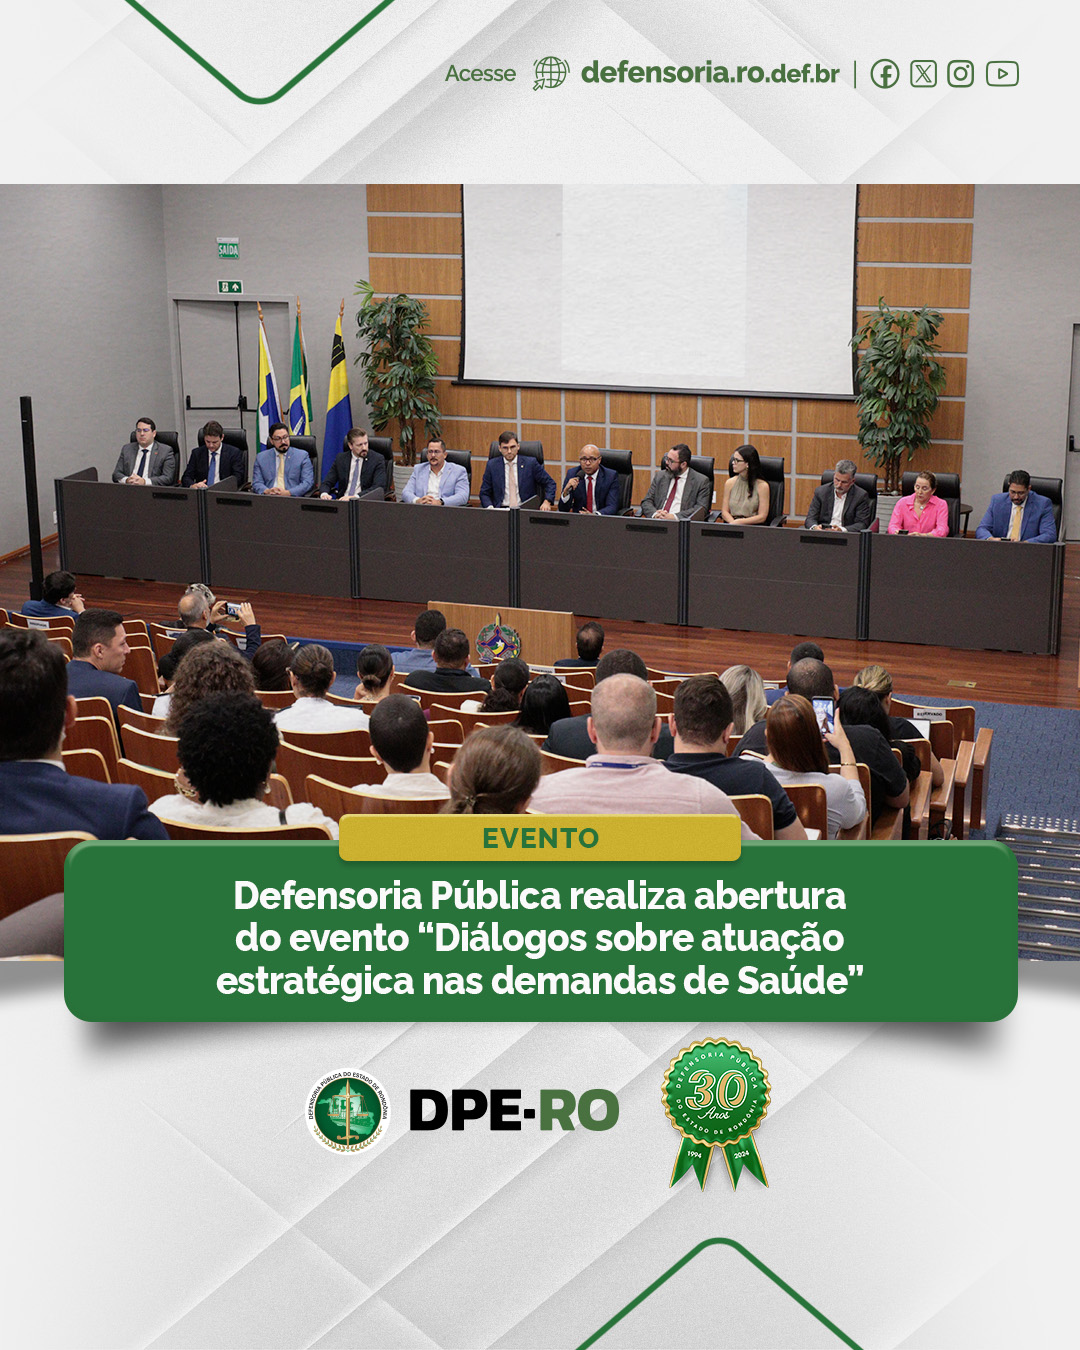 Defensoria Pública realiza abertura do evento “Diálogos sobre atuação estratégica nas demandas de Saúde”